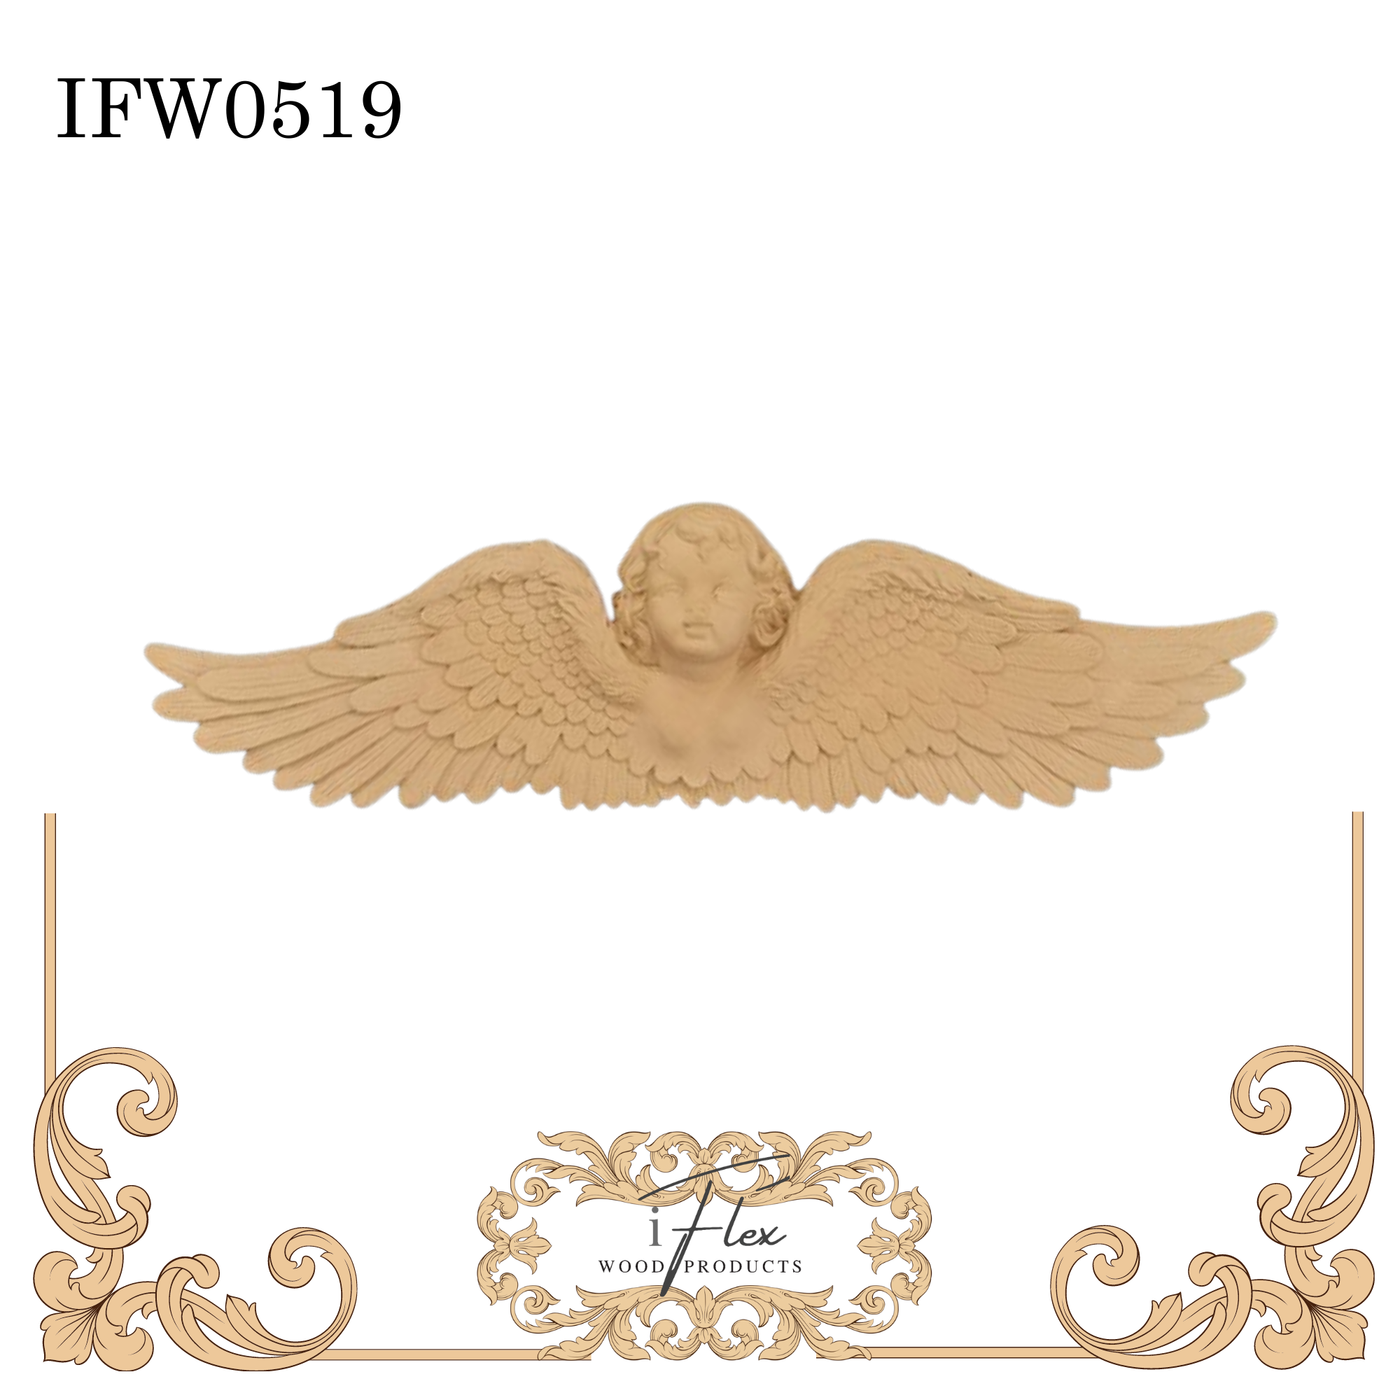 IFW 0519